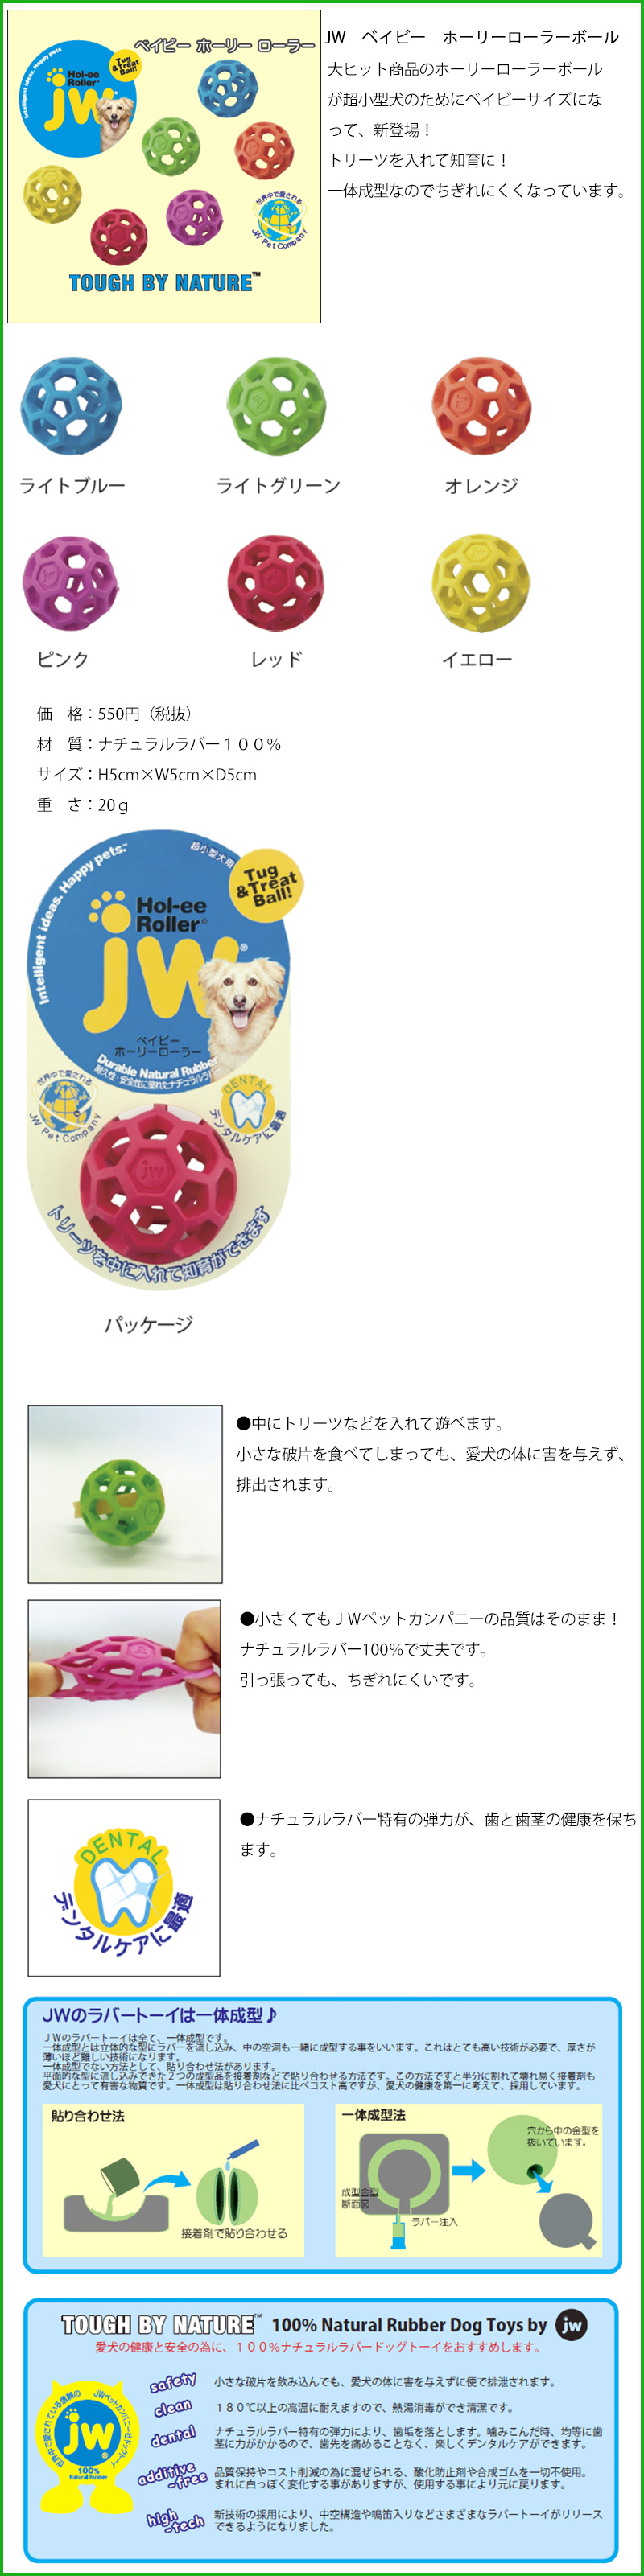 犬のおもちゃ PLATZ JW ベイビー ホーリーローラーボール 超小型犬のためにベイビーサイズになって新登場 jw43109  犬服の専門店PETFiND(ペットファインド) 通販 